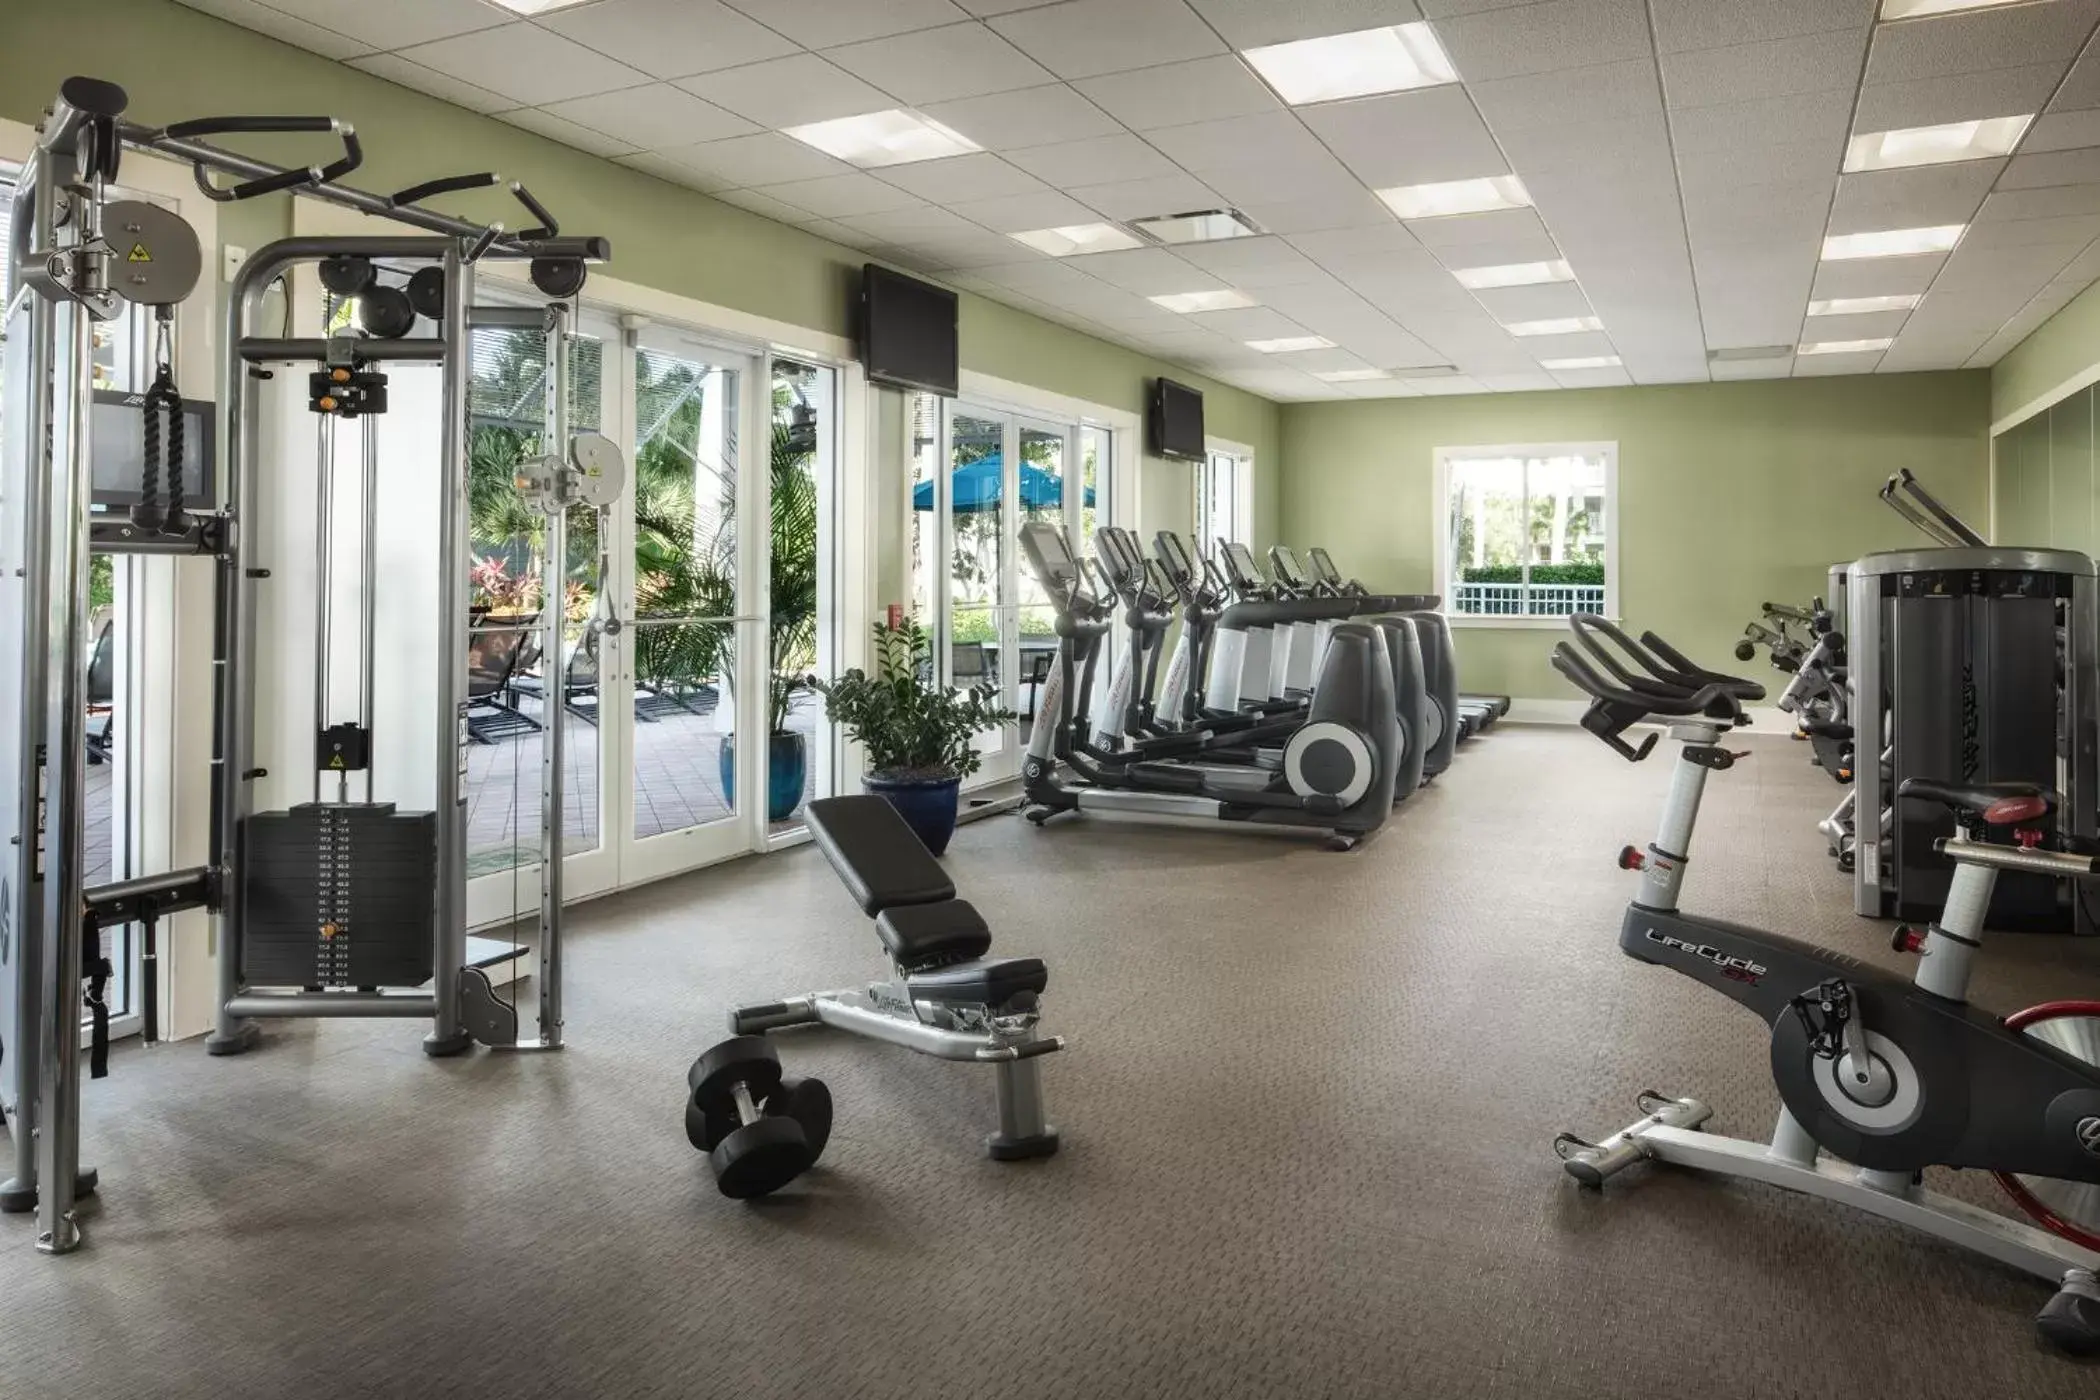 Fitness centre/facilities, Fitness Center/Facilities in Hyatt Residence Club Bonita Springs, Coconut Plantation